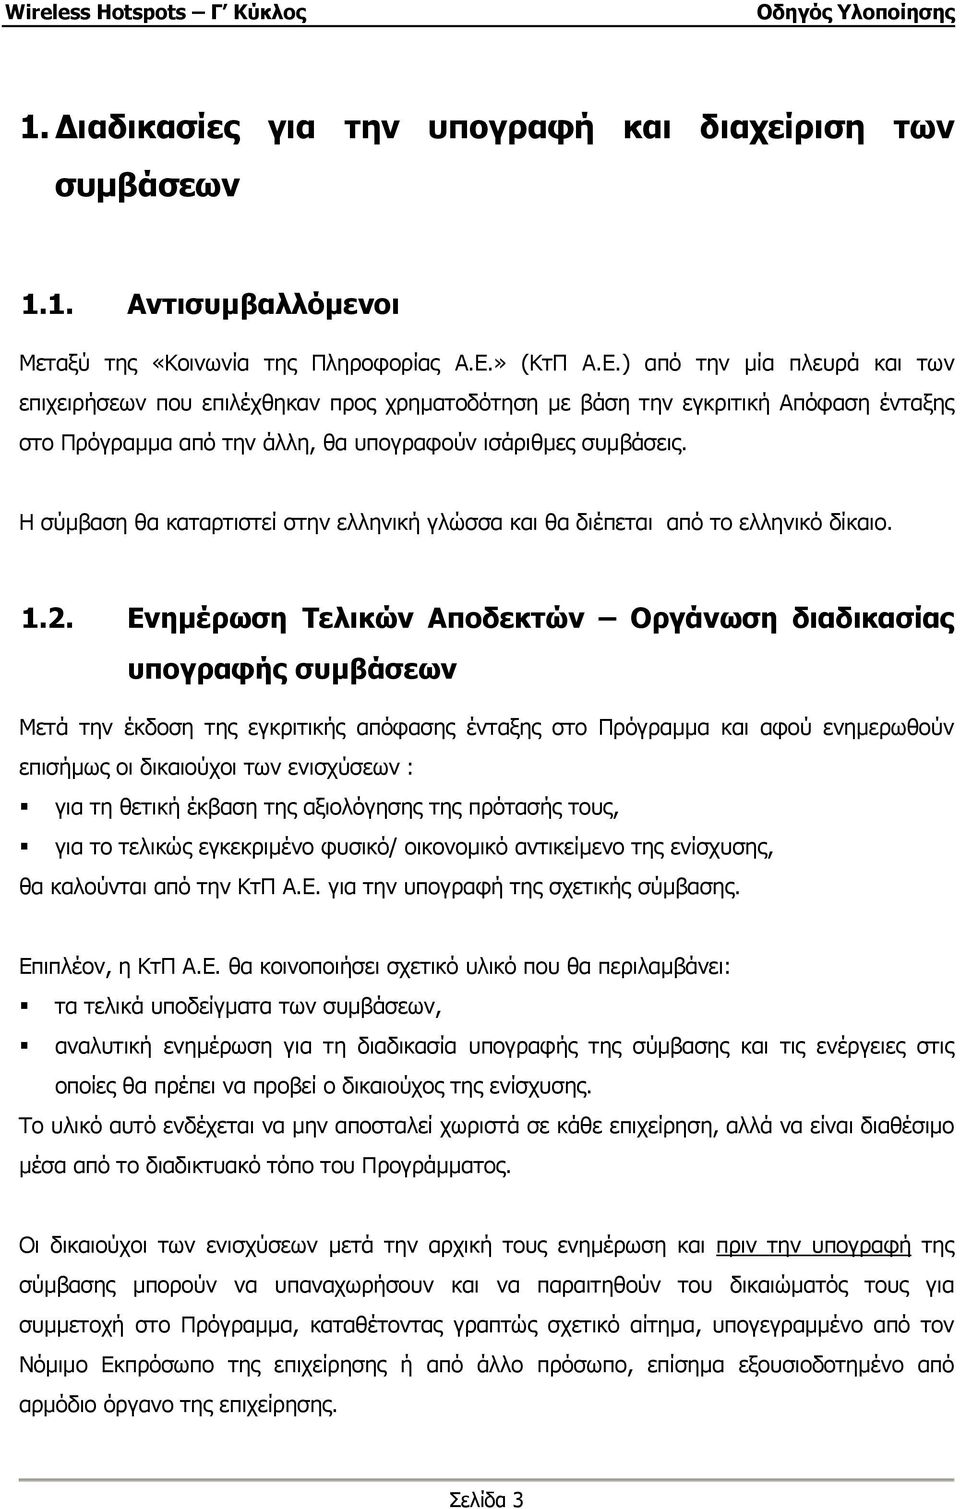 Η σύµβαση θα καταρτιστεί στην ελληνική γλώσσα και θα διέπεται από το ελληνικό δίκαιο. 1.2.